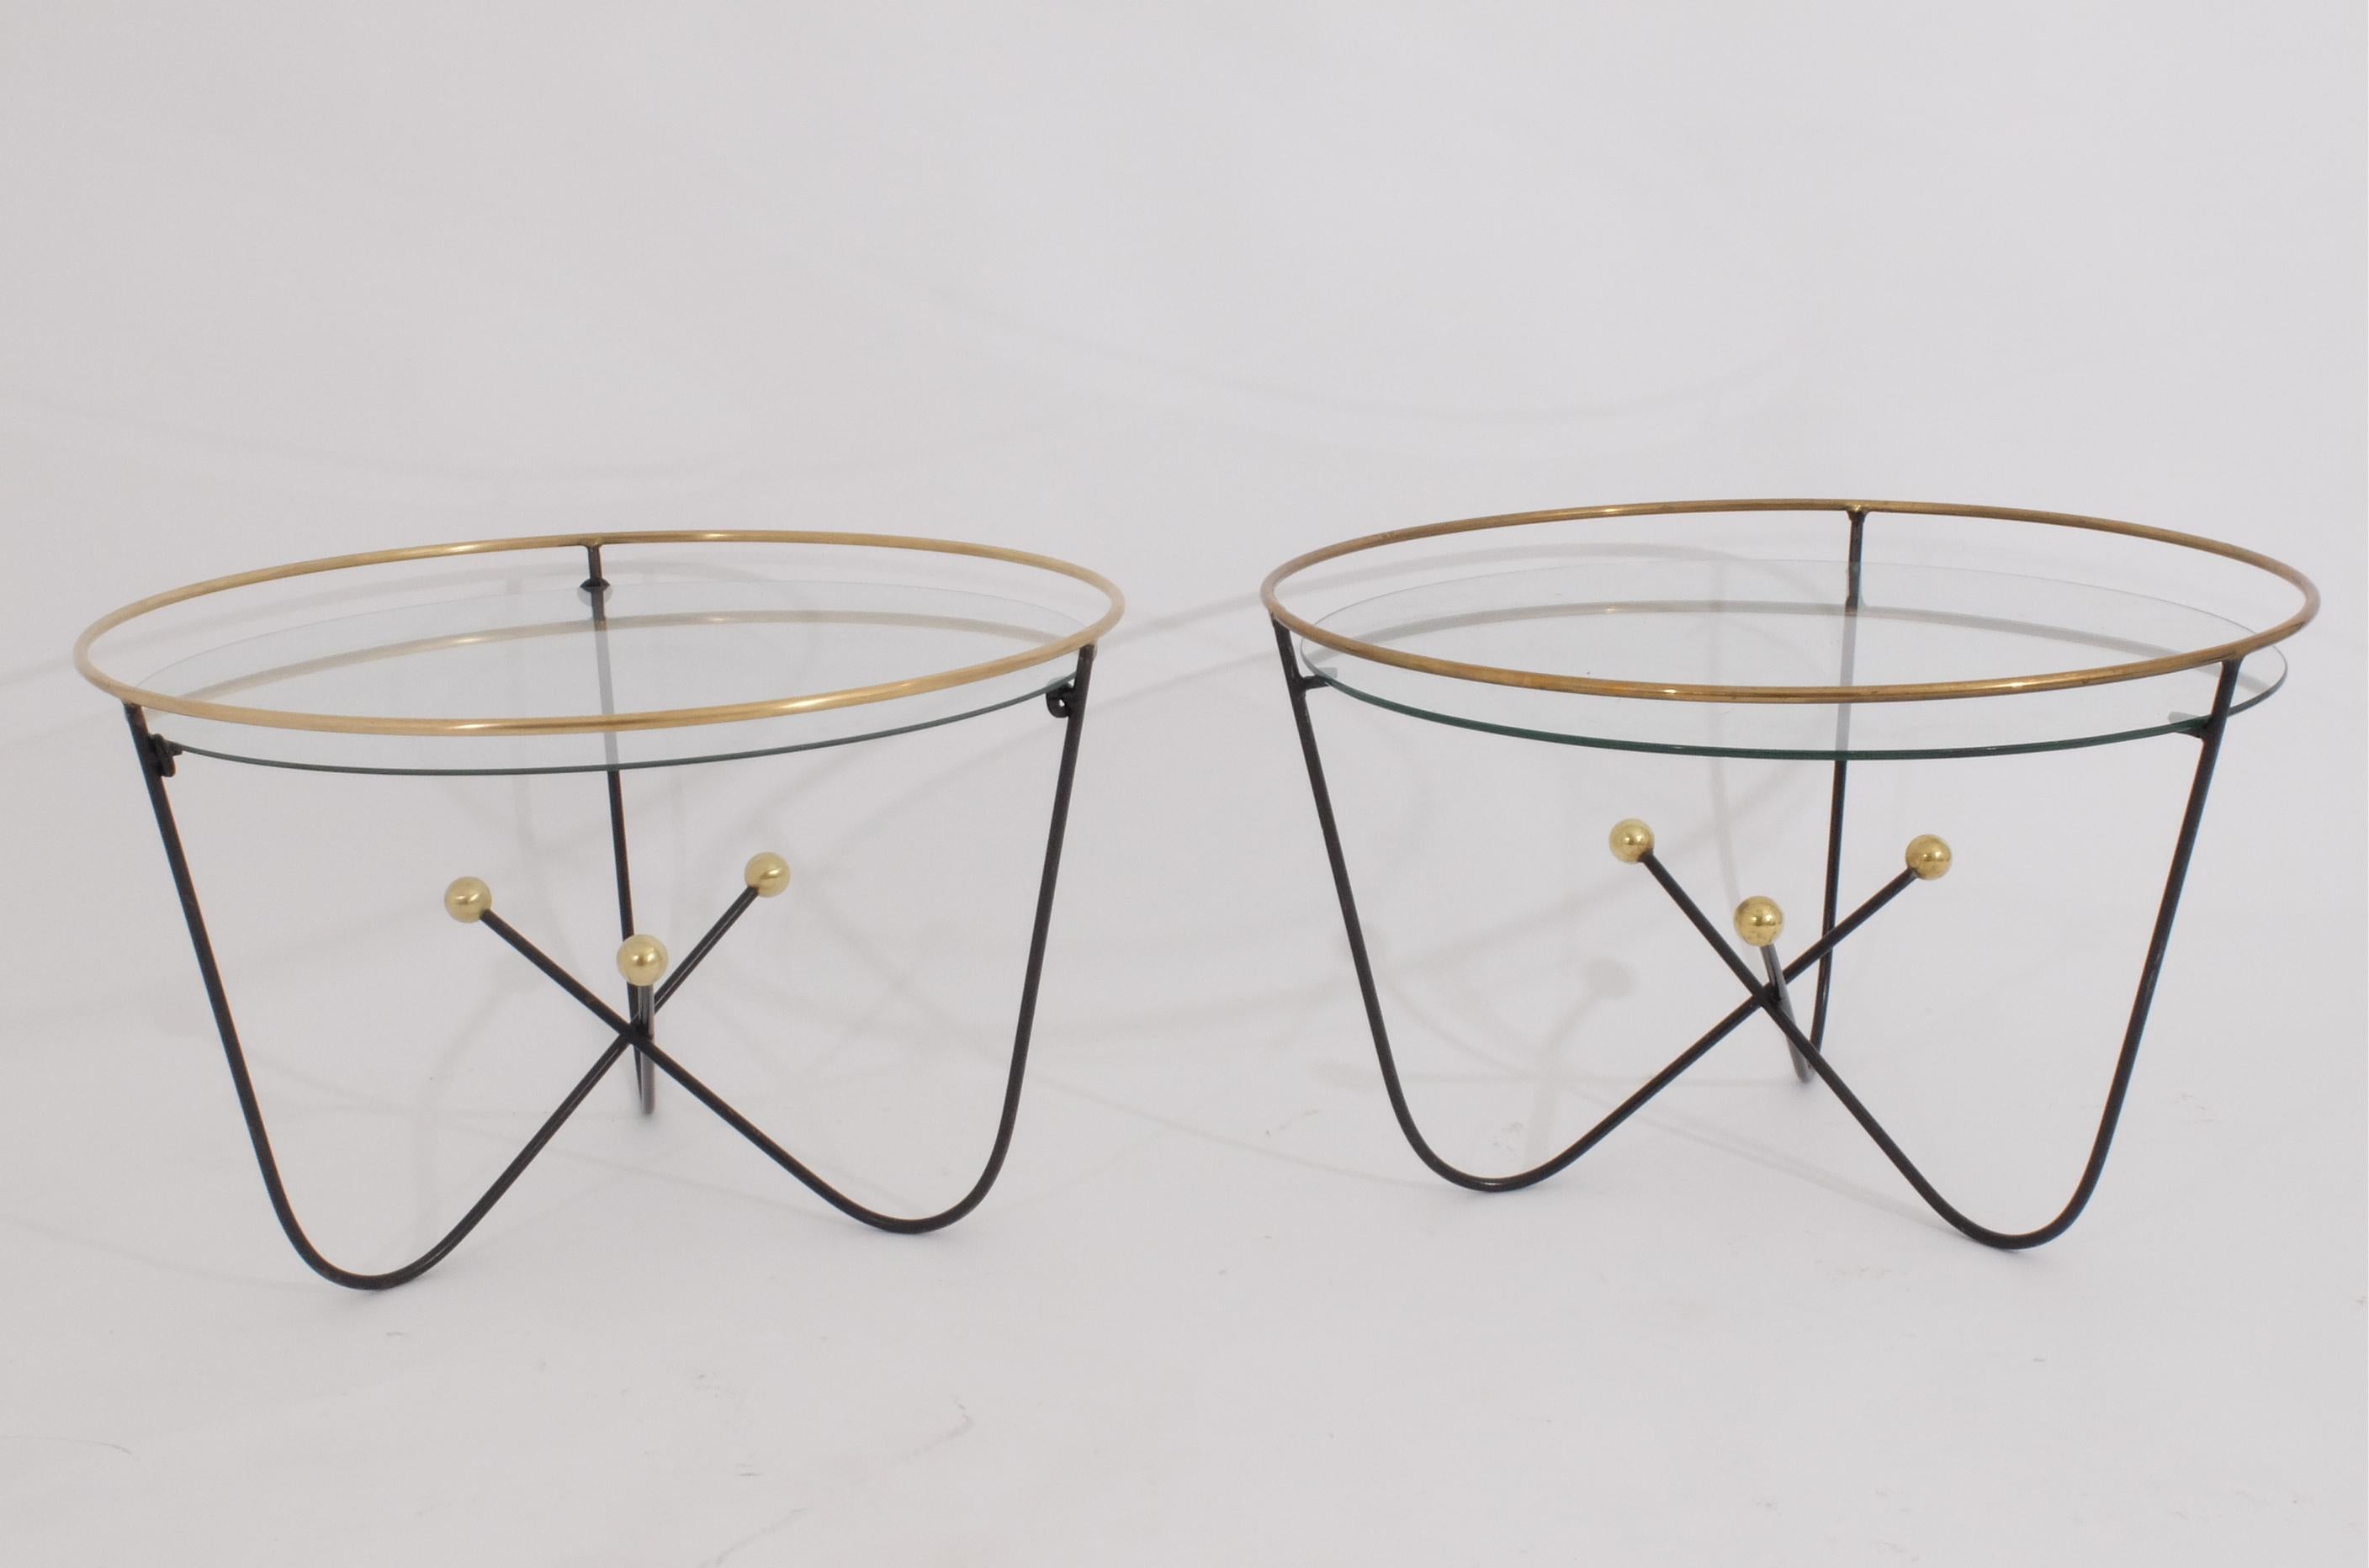 Edward Ihnatowicz pour Marli Furniture et vendu au détail par Heal's London dans les années 1950.
Ces petites tables basses du milieu du siècle sont typiques du style 